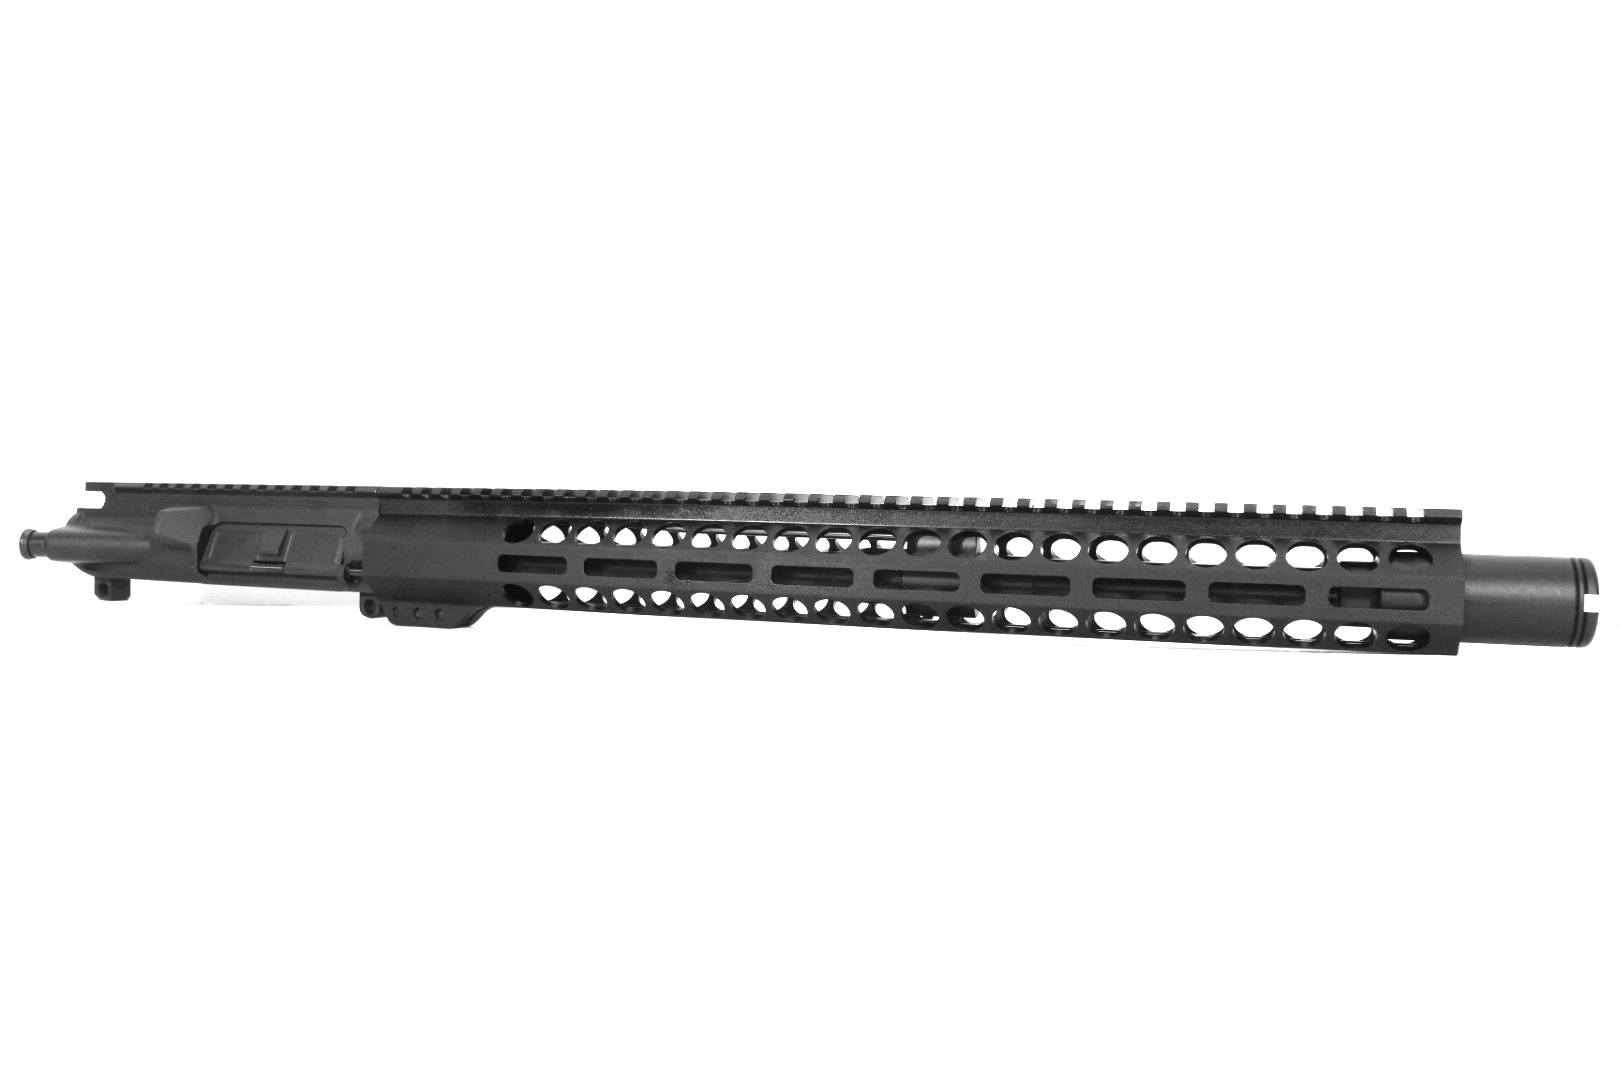 16 inch AR-15 AR AR15 350 LEGEND Carbine Length Melonite Upper w Flash Can